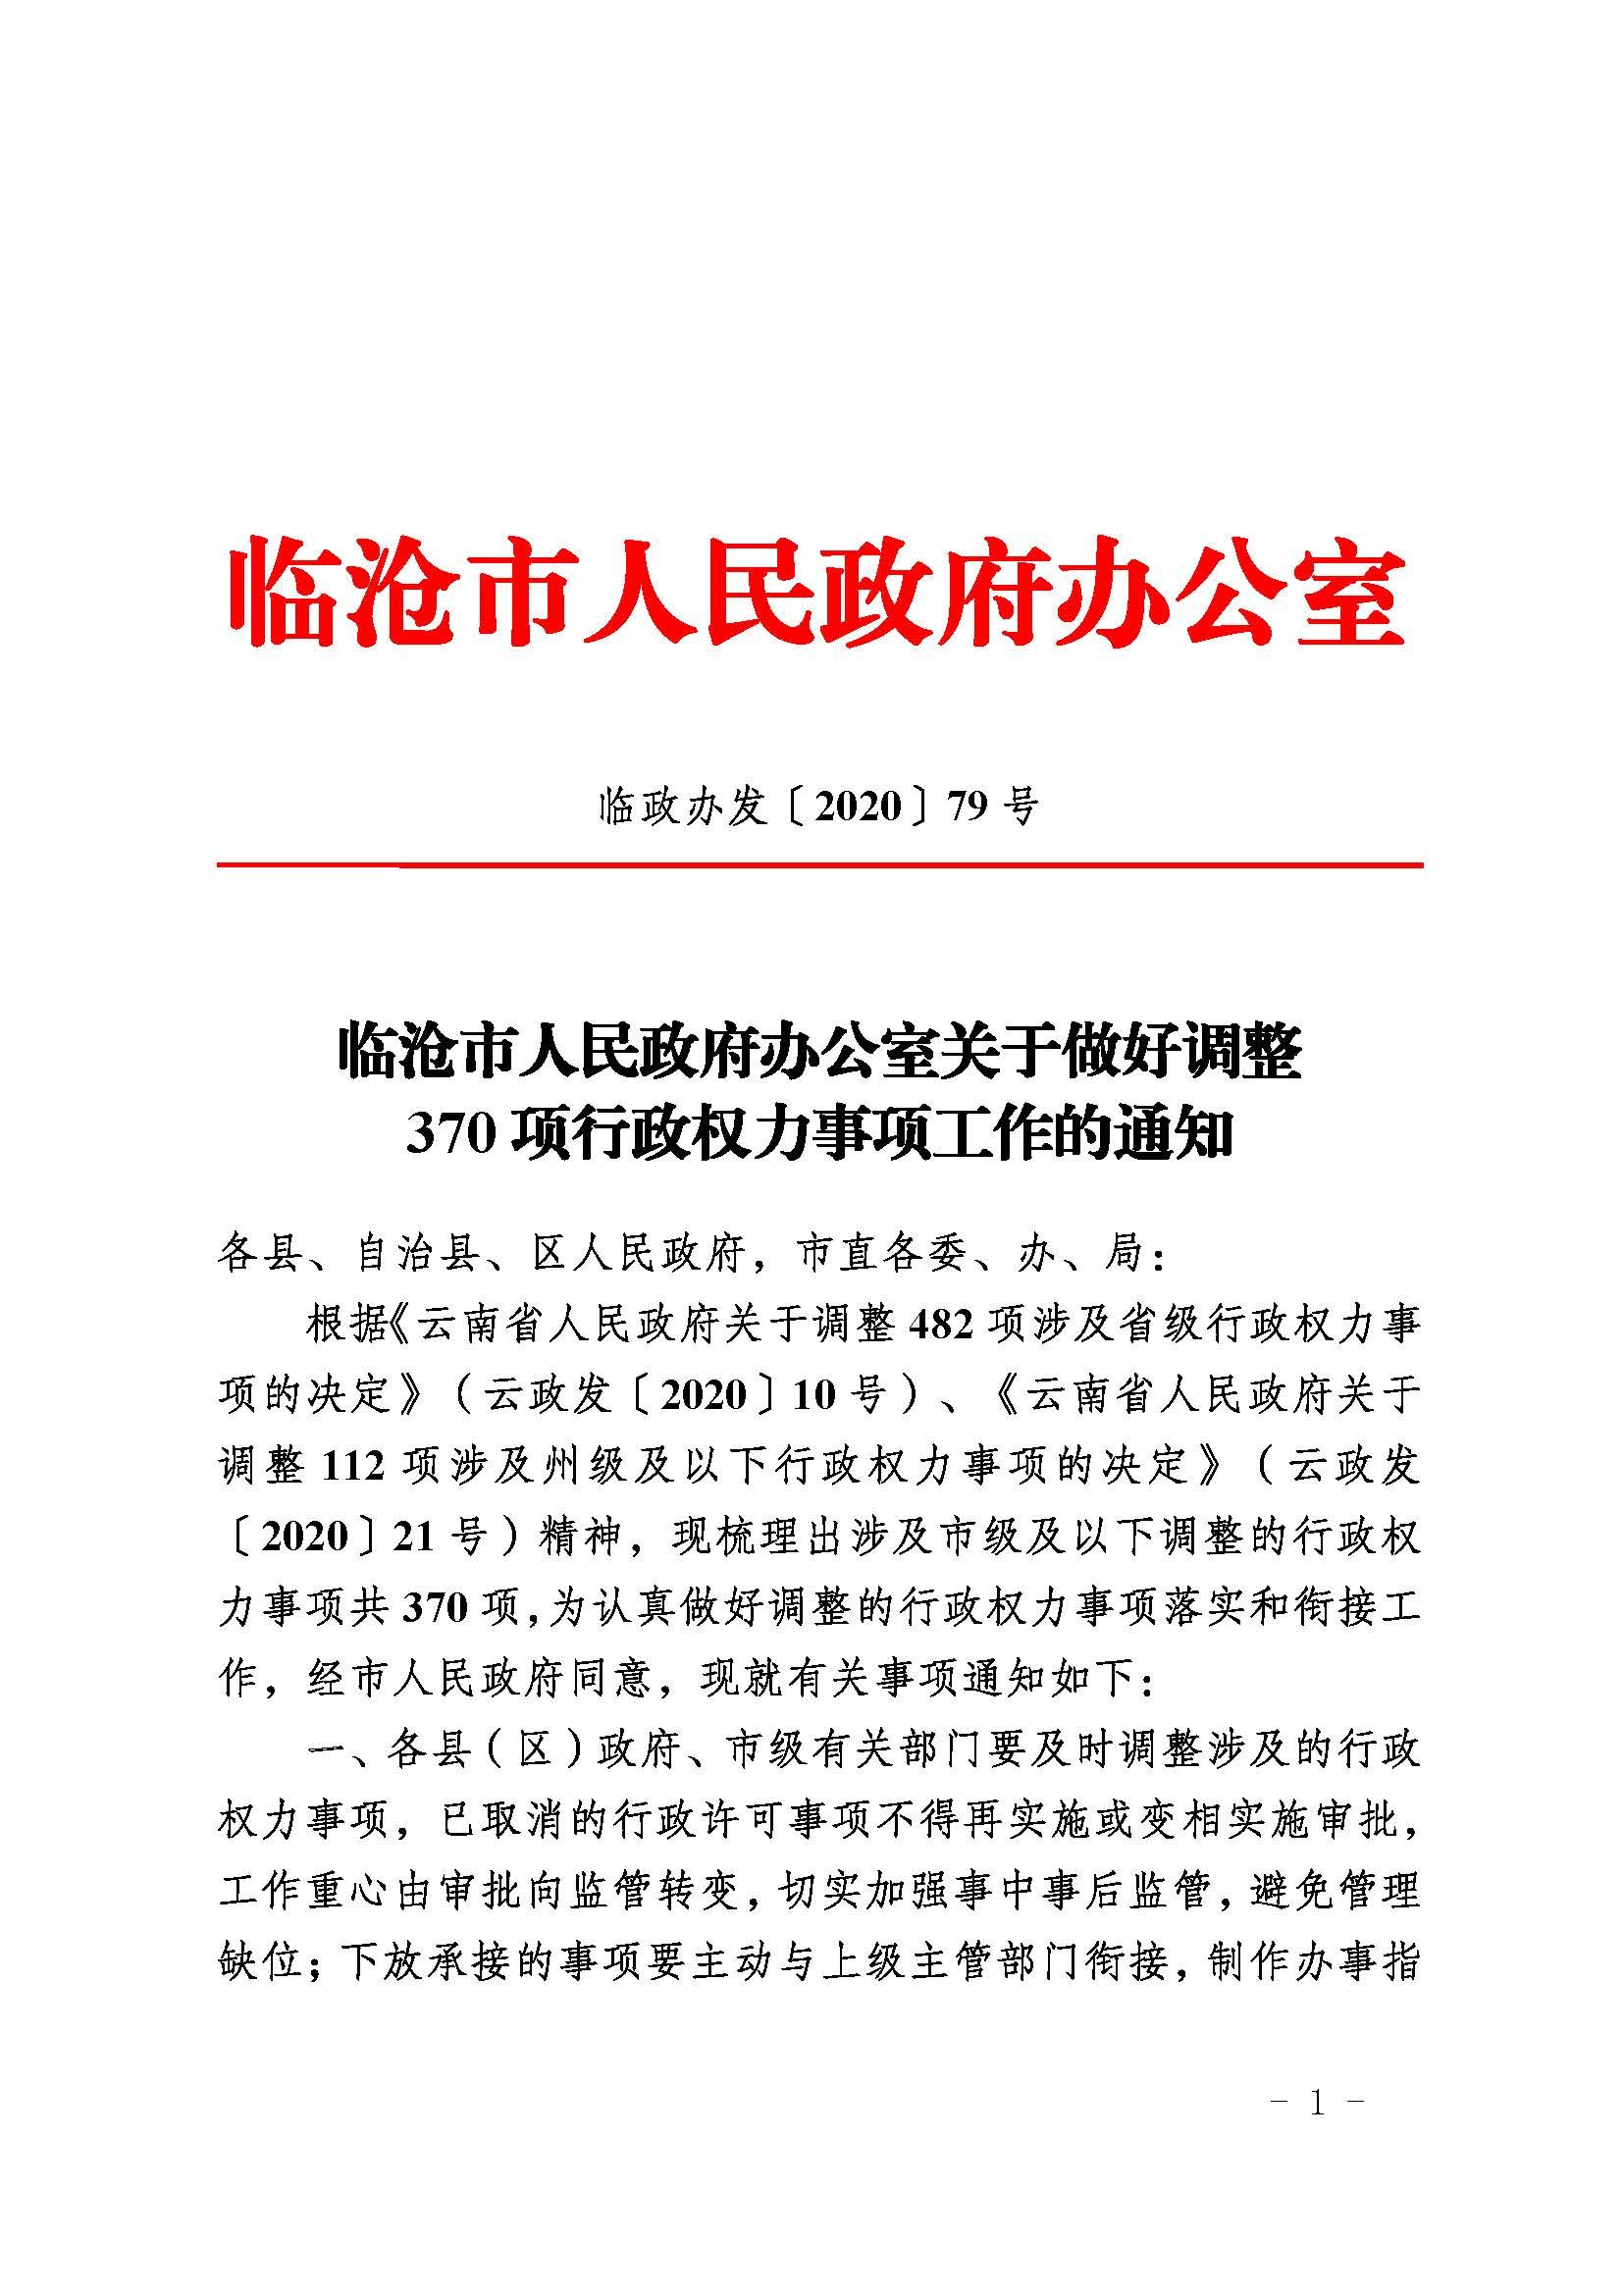 临沧市人民政府办公室关于做好调整370项行政权力事项工作的通知_页面_01